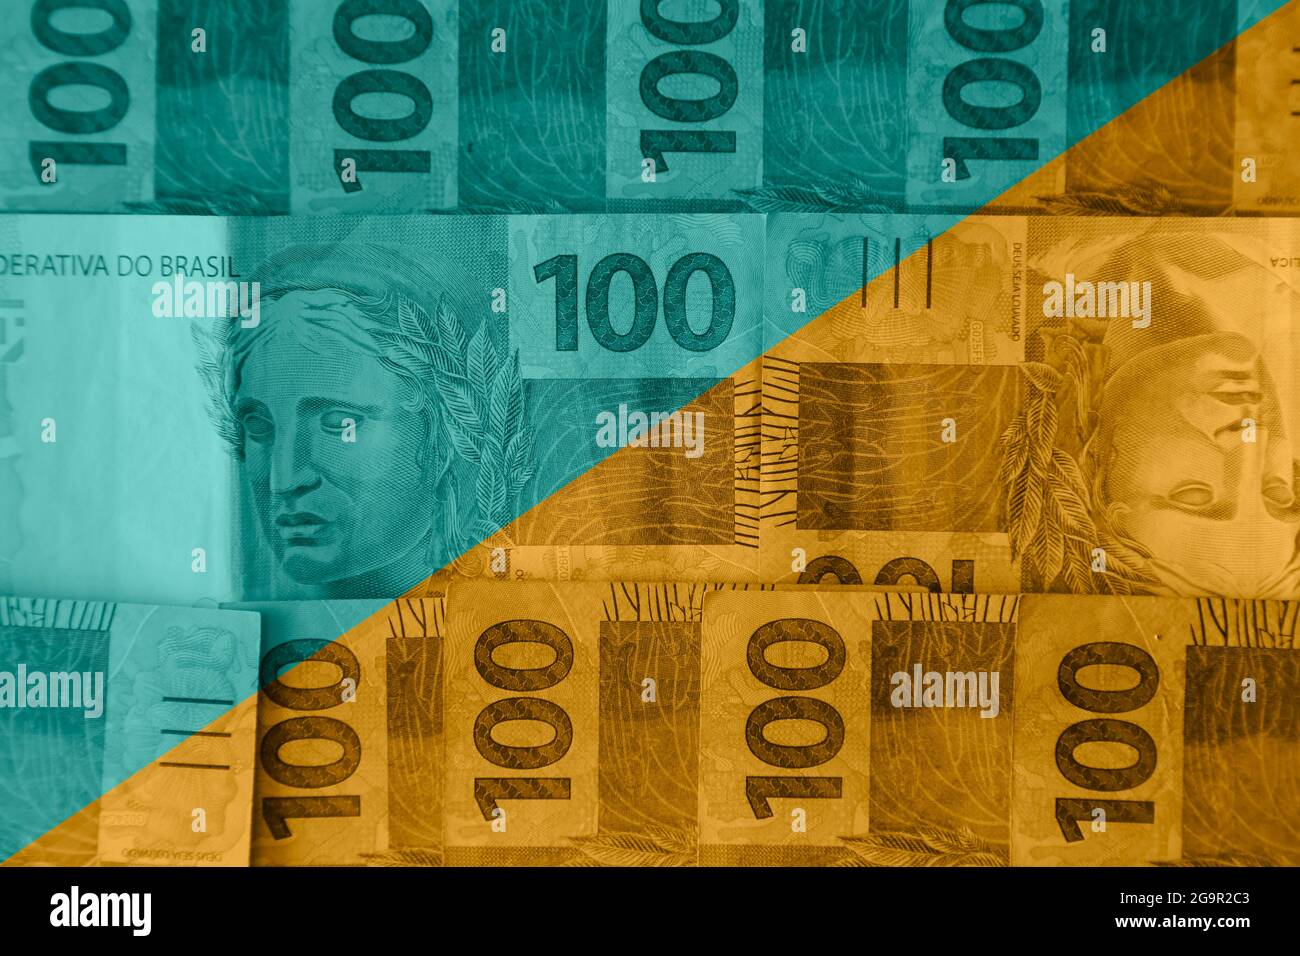 Brésil Money concept - couleur verte et jaune et mélange de cent reais de factures Banque D'Images